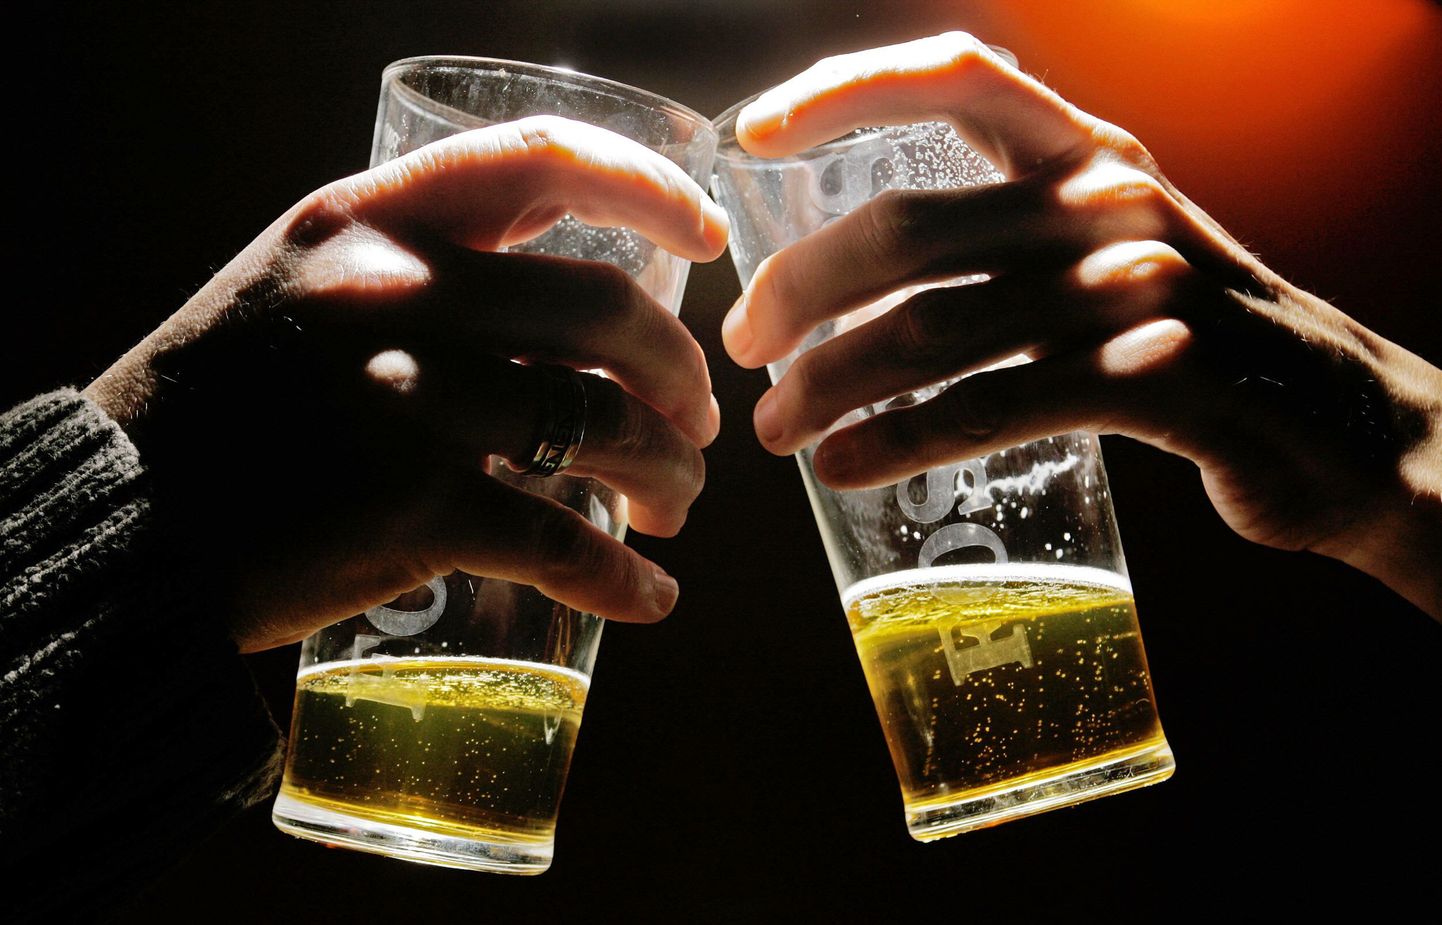 Ameerika Samoa vangid said käia poes õlut ostmas